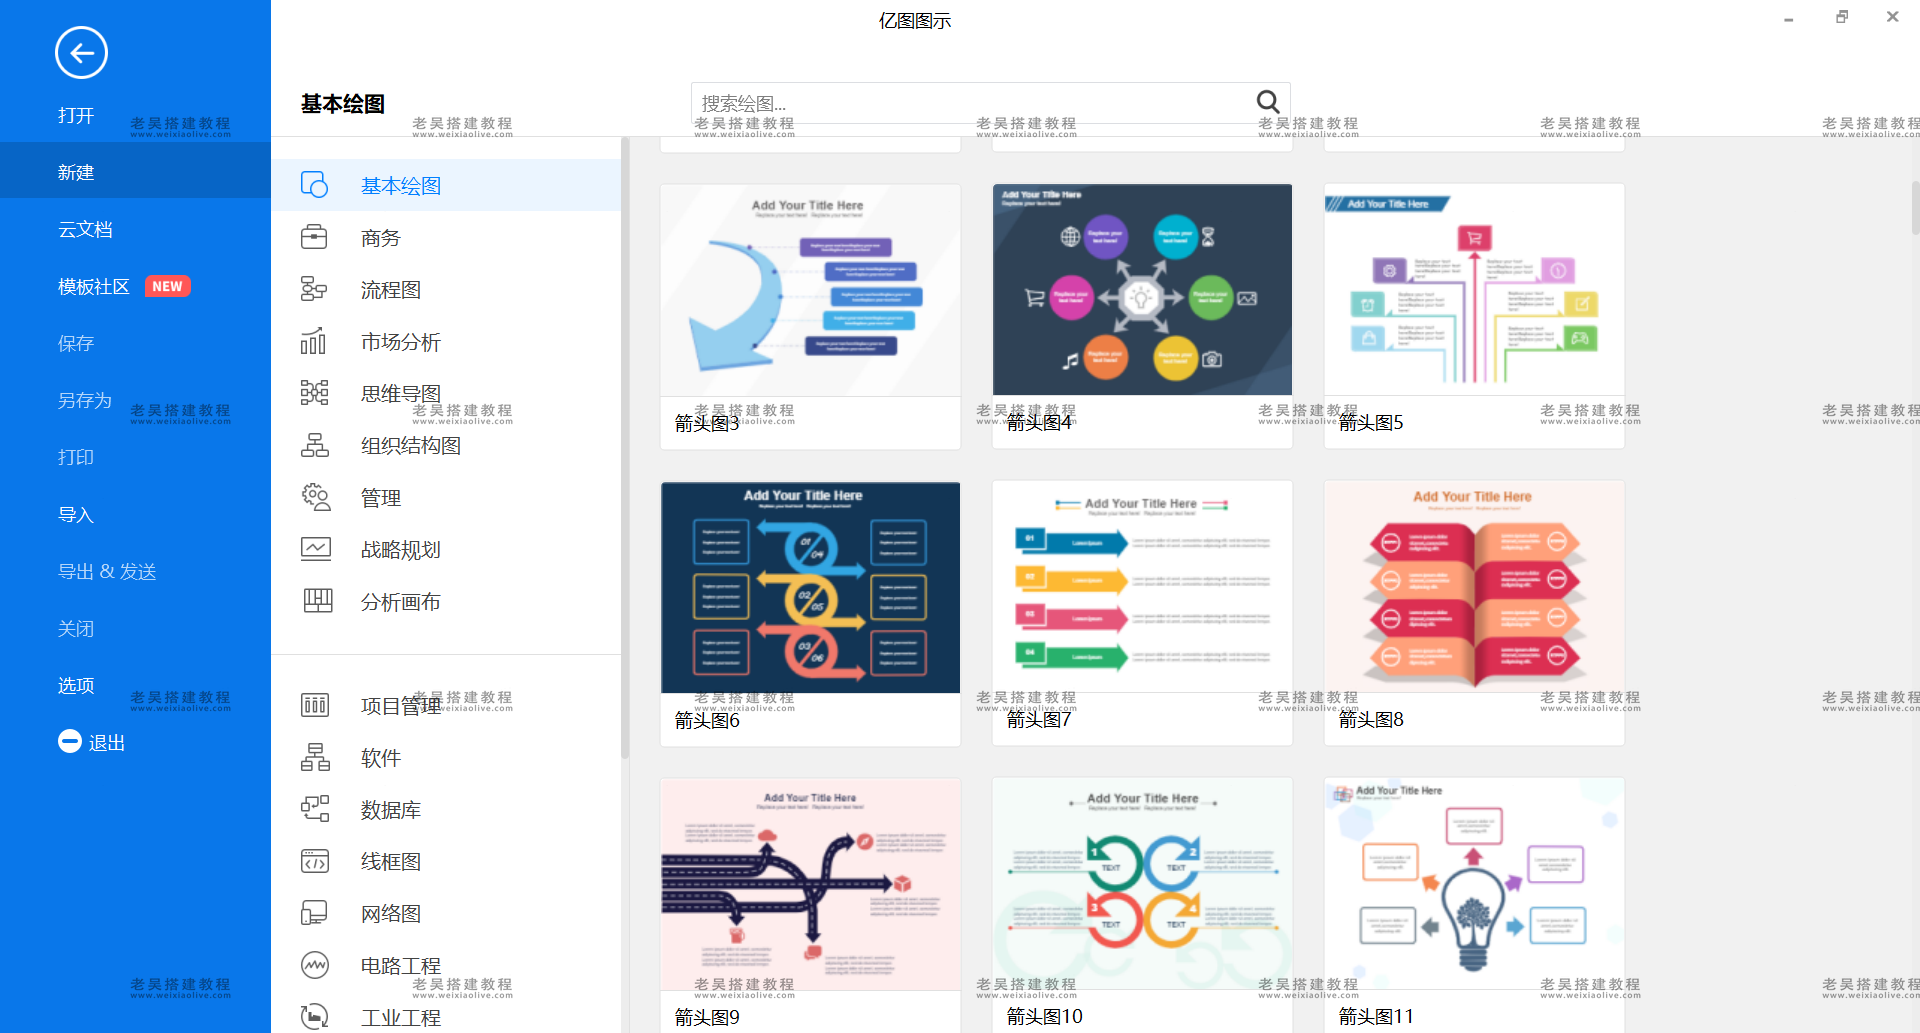 图表设计软件亿图图示工具 Edraw Max v10.5.2 中文破解版  第2张